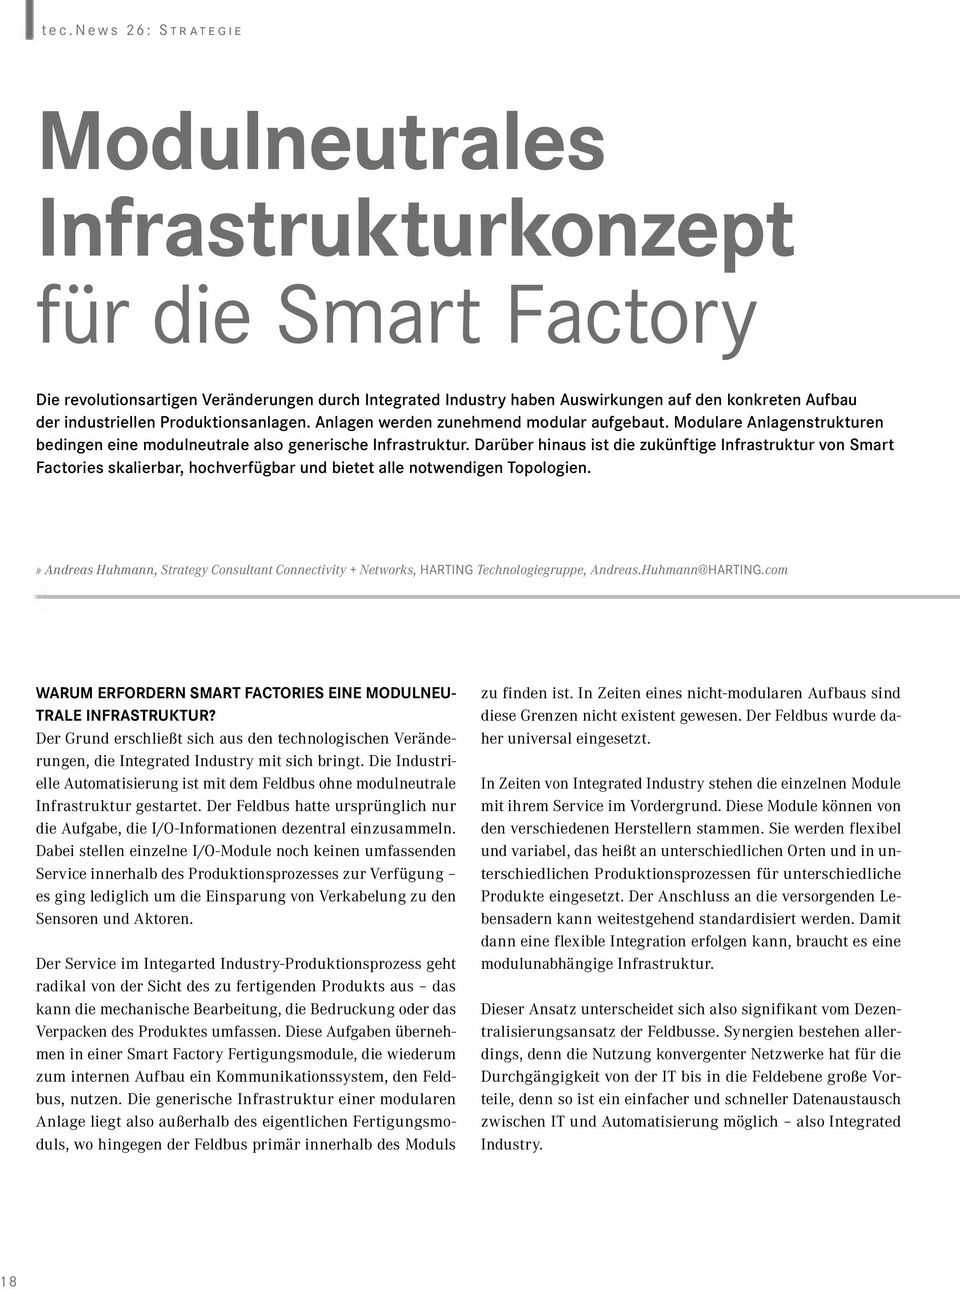 Darüber hinaus ist die zukünftige Infrastruktur von Smart Factories skalierbar, hochverfügbar und bietet alle notwendigen Topologien.